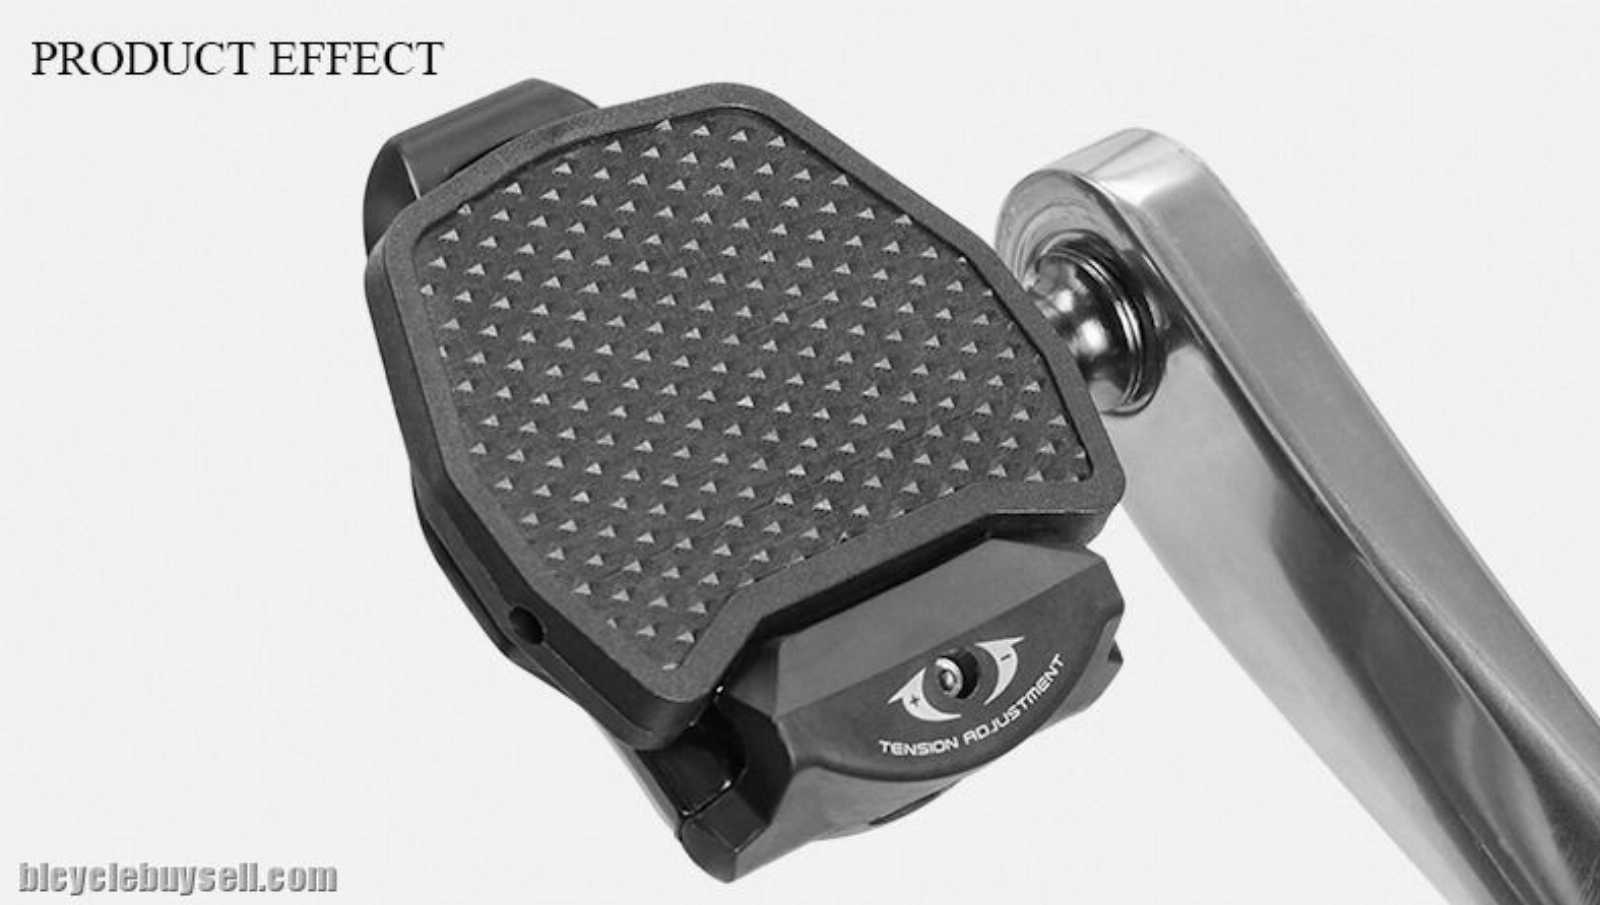 Адаптер для контактных педалей Shimano SPD